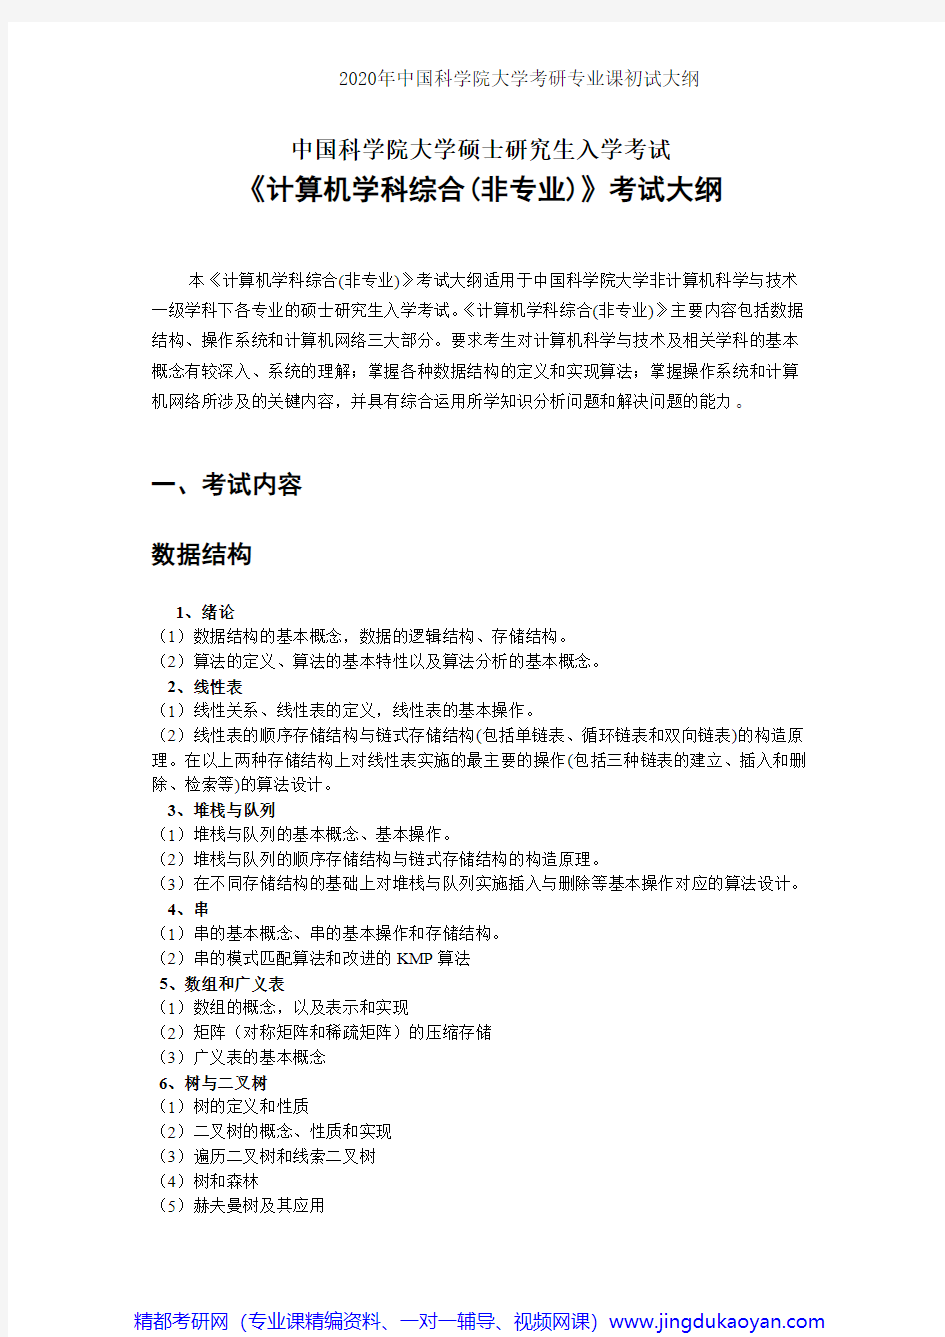 中国科学院大学862计算机学科综合(非专业)2020年考研专业课初试大纲